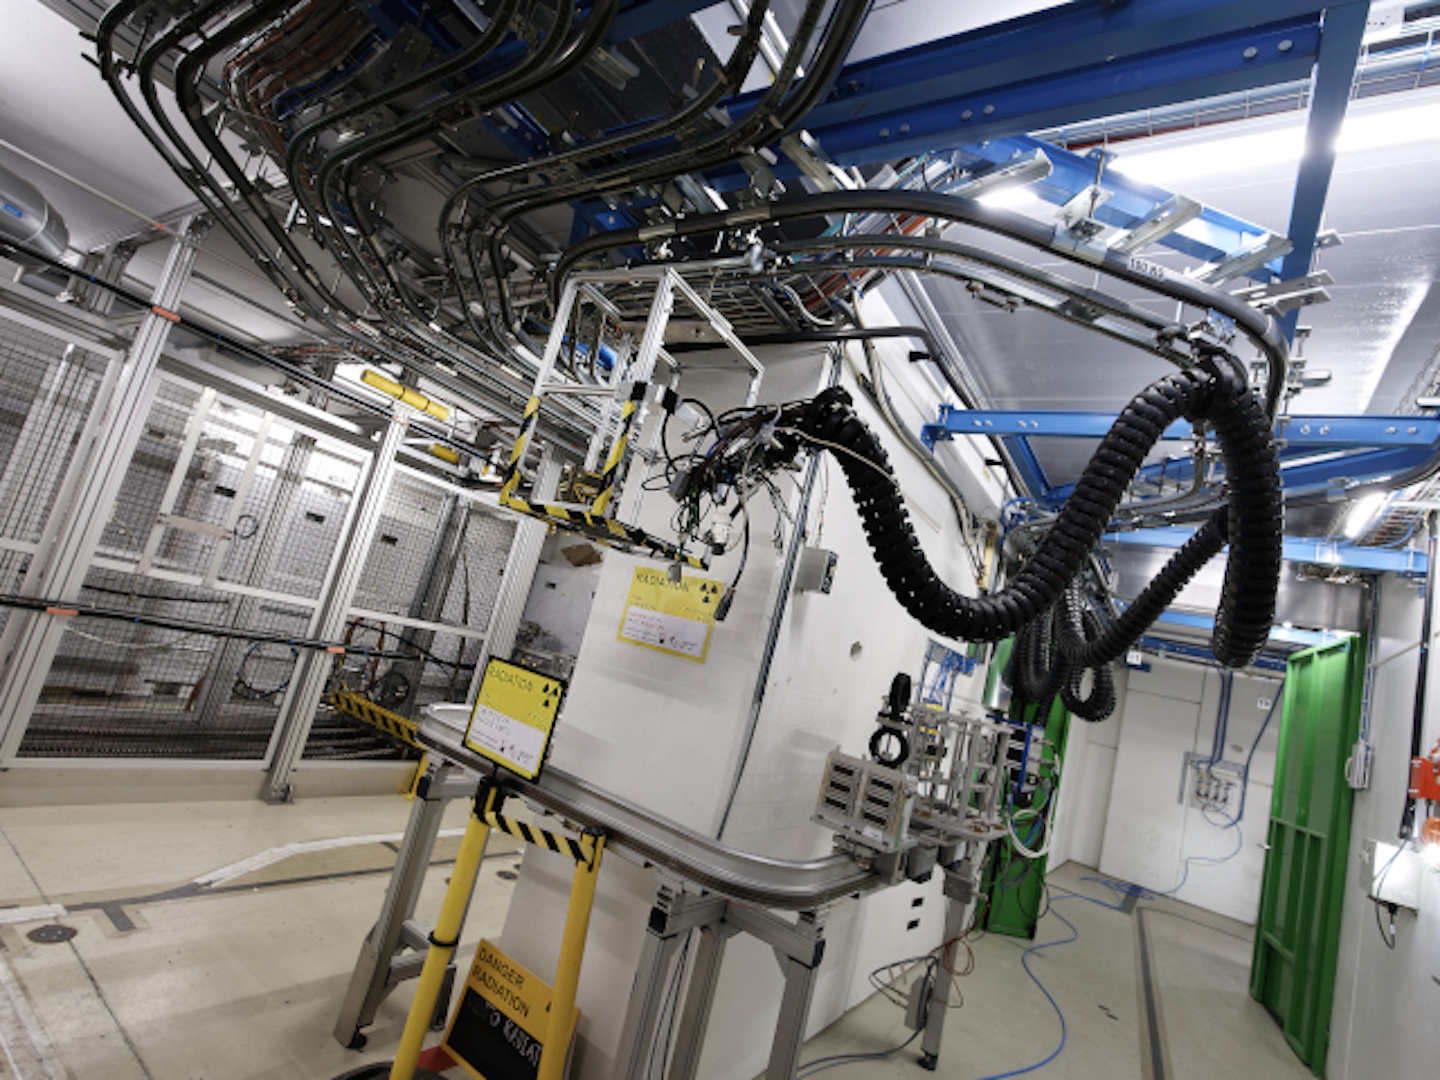 Grâce au projet HEARTS, l'installation à ions lourds CHARM, située au CERN, pourra répondre aux besoins des spécialistes de l'espace qui souhaitent tester les effets des rayonnements sur les composants et systèmes électroniques.